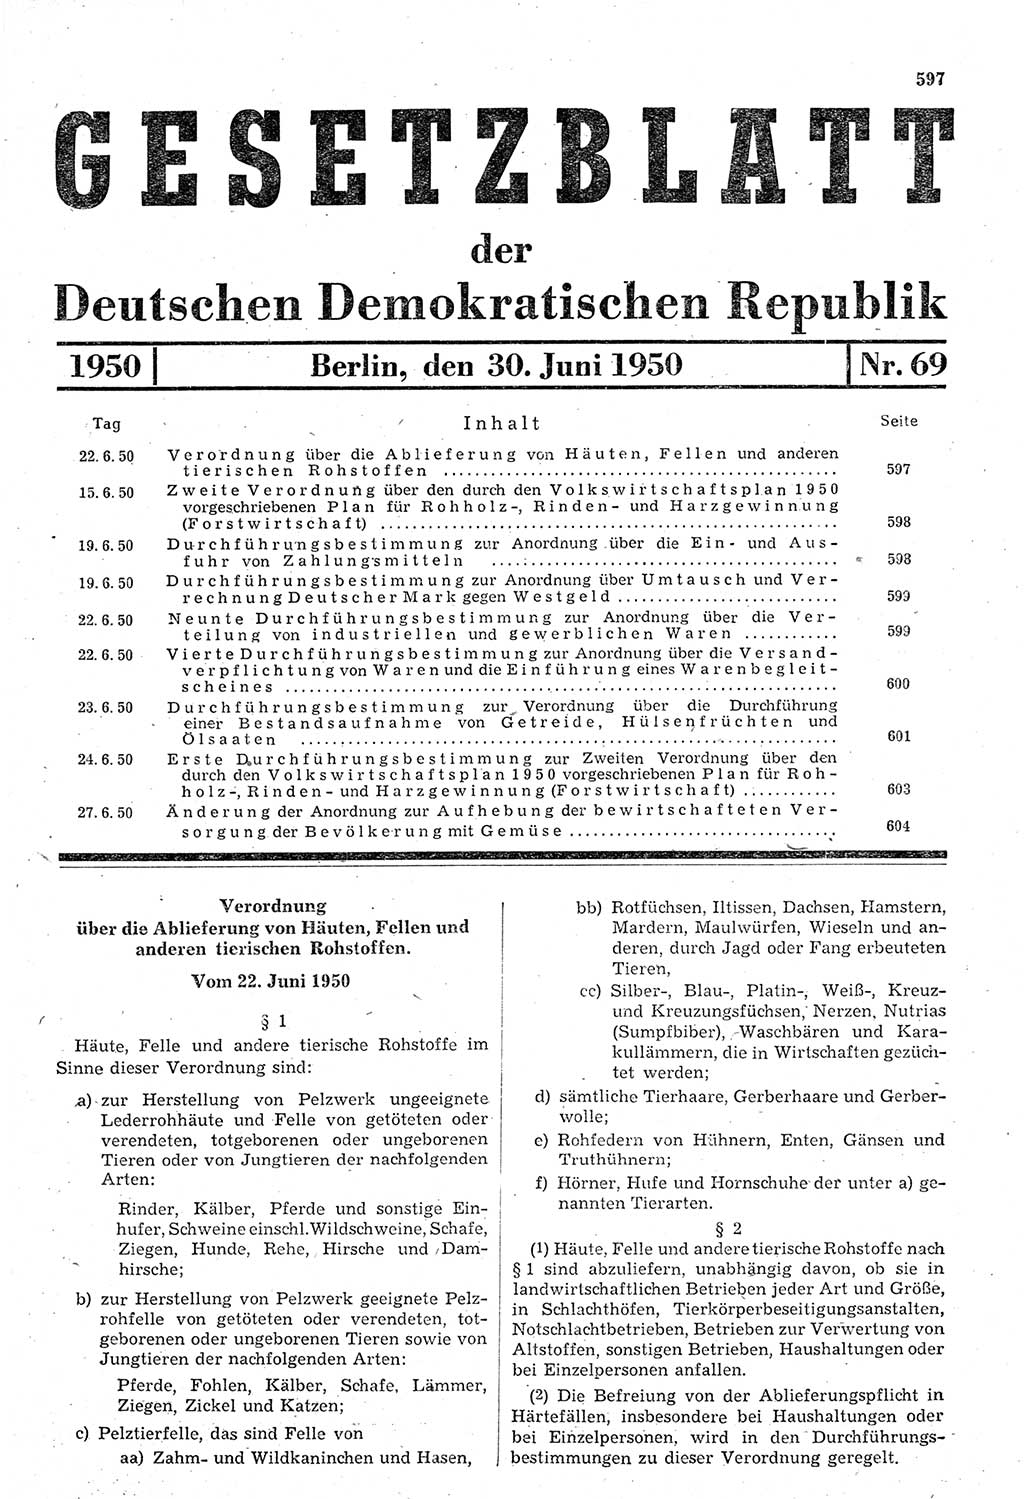 Gesetzblatt (GBl.) der Deutschen Demokratischen Republik (DDR) 1950, Seite 597 (GBl. DDR 1950, S. 597)